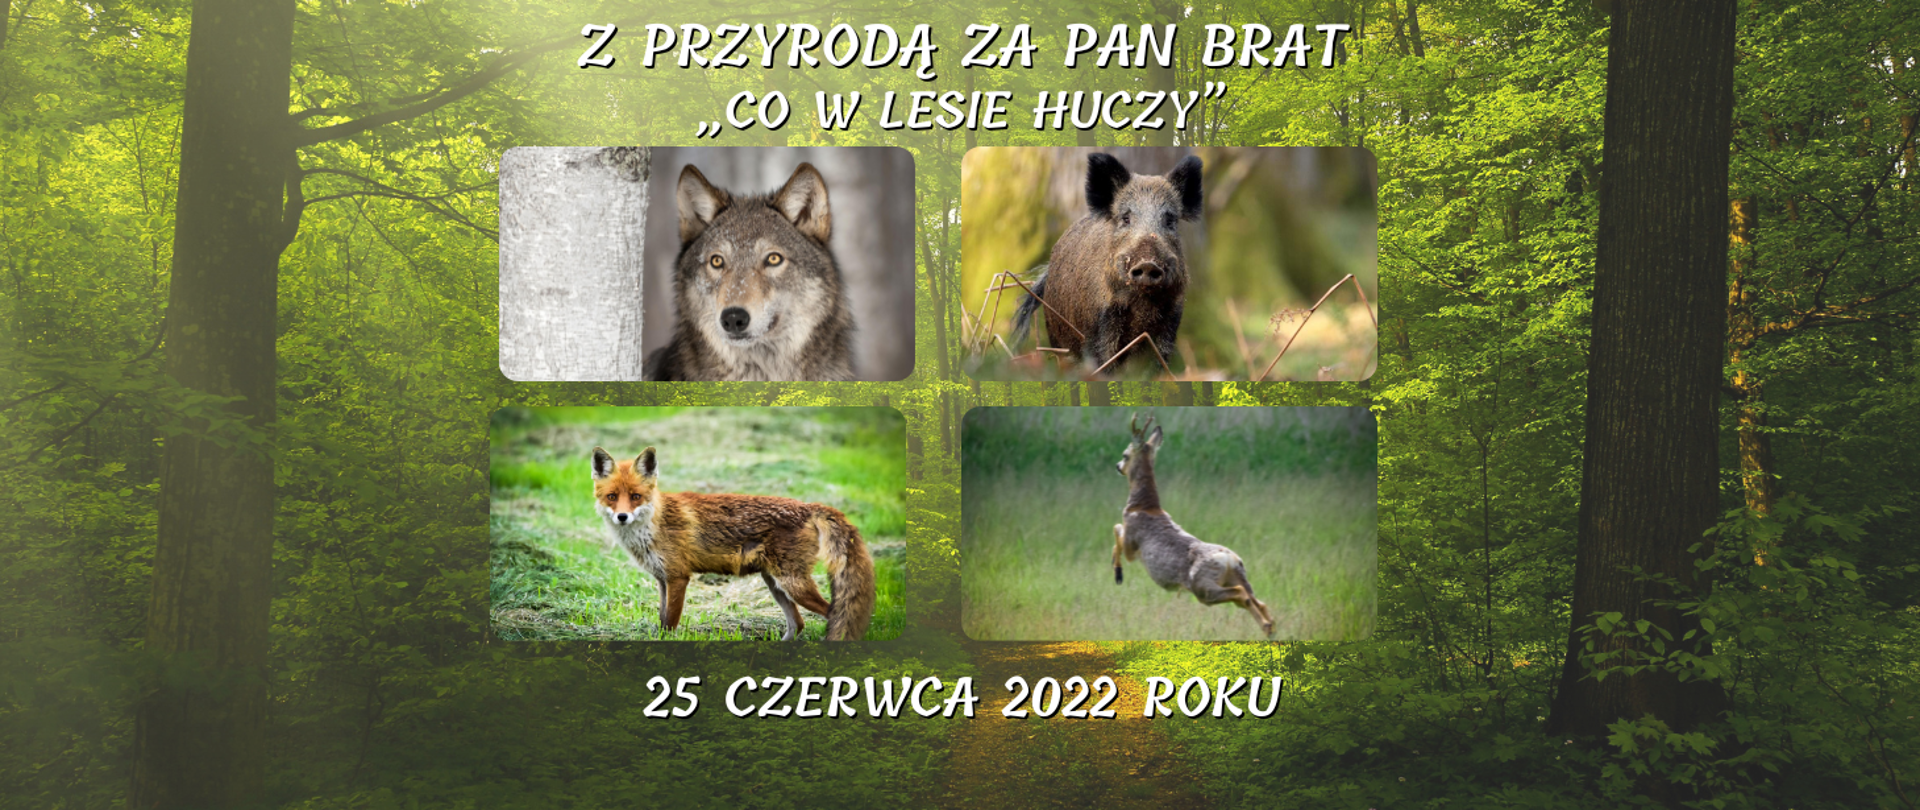 grafika przedstawia banner z tekstem Z PRZYRODĄ ZA PAN BRAT - „CO W LESIE HUCZY”, 25 czerwca 2022 roku